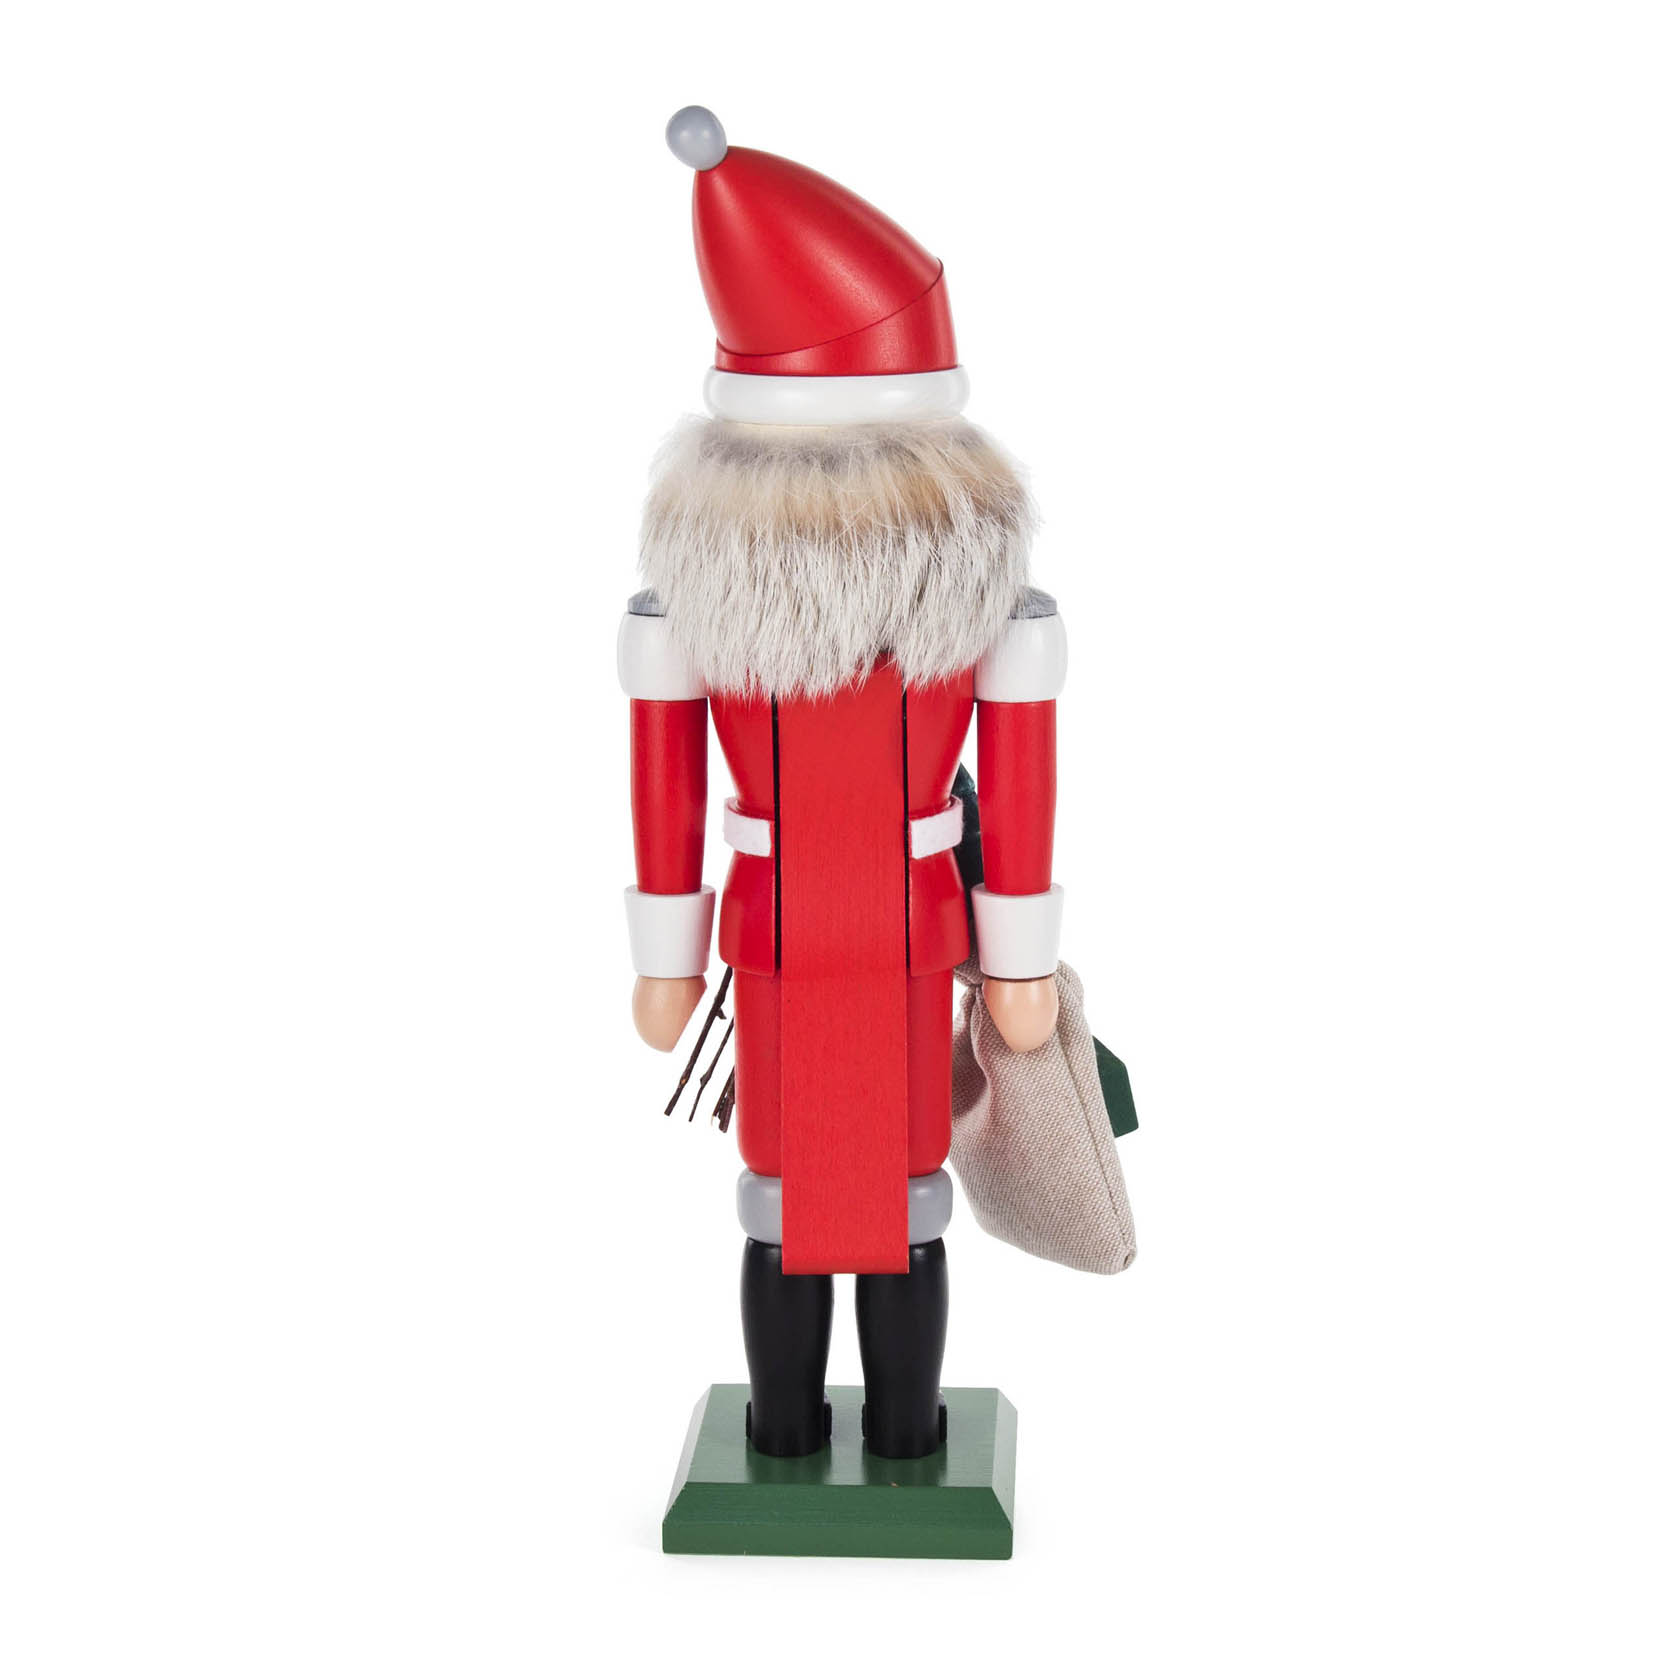 Nussknacker Weihnachtsmann rot, 32cm, mit Rute und Geschenkesack